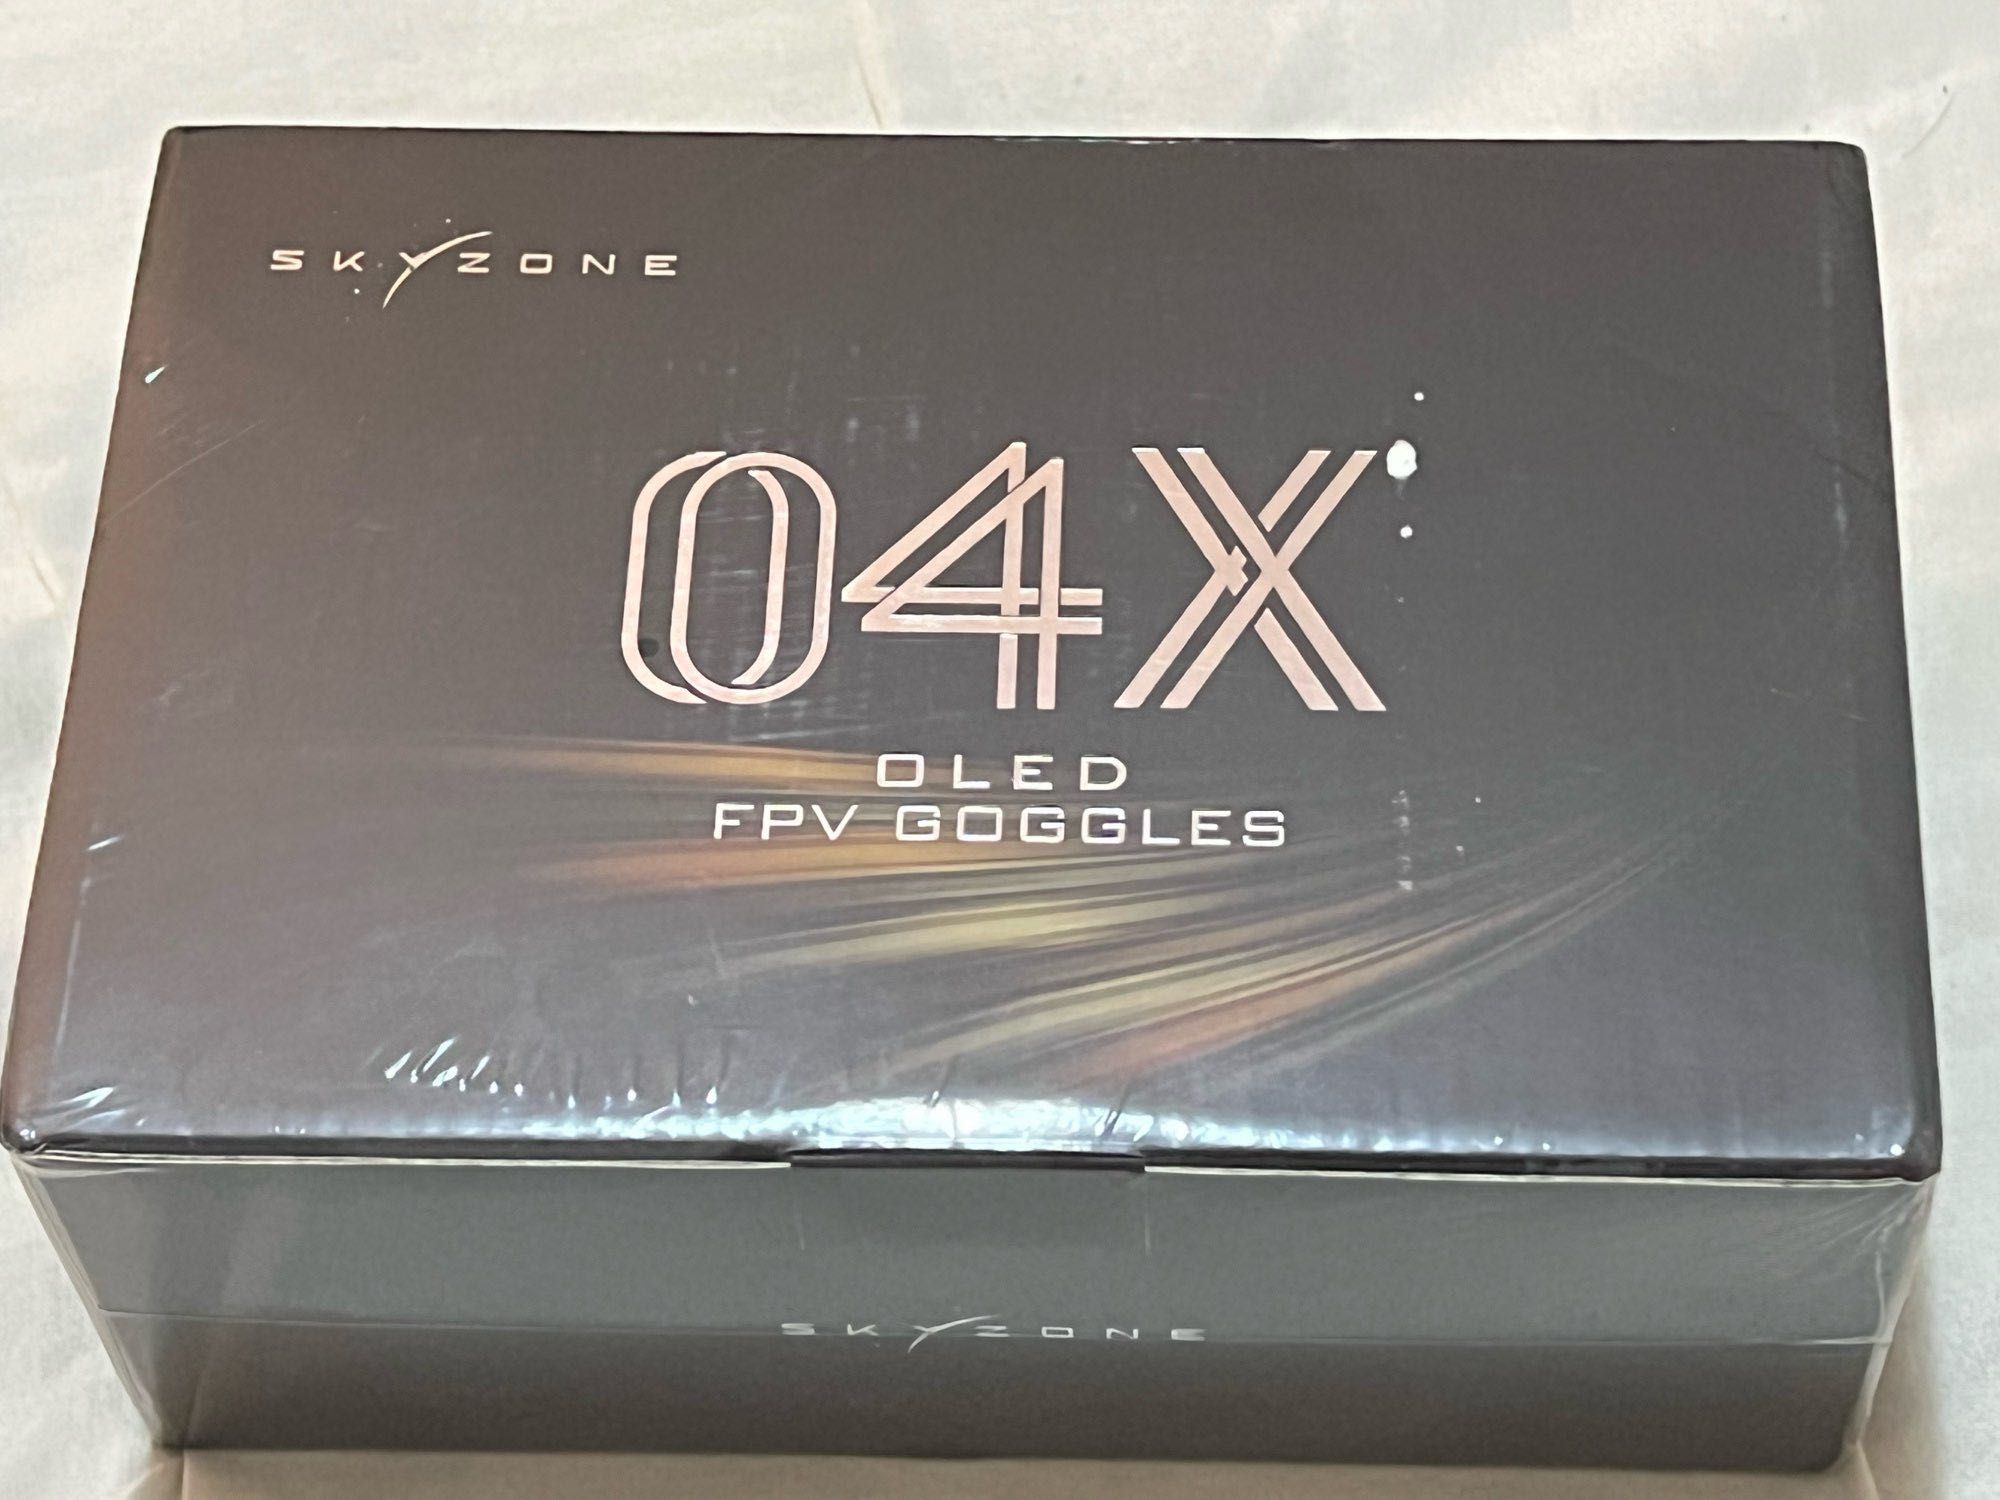 Окуляри SkyZone 04X pro топова модель Внаявності! FPV glasses